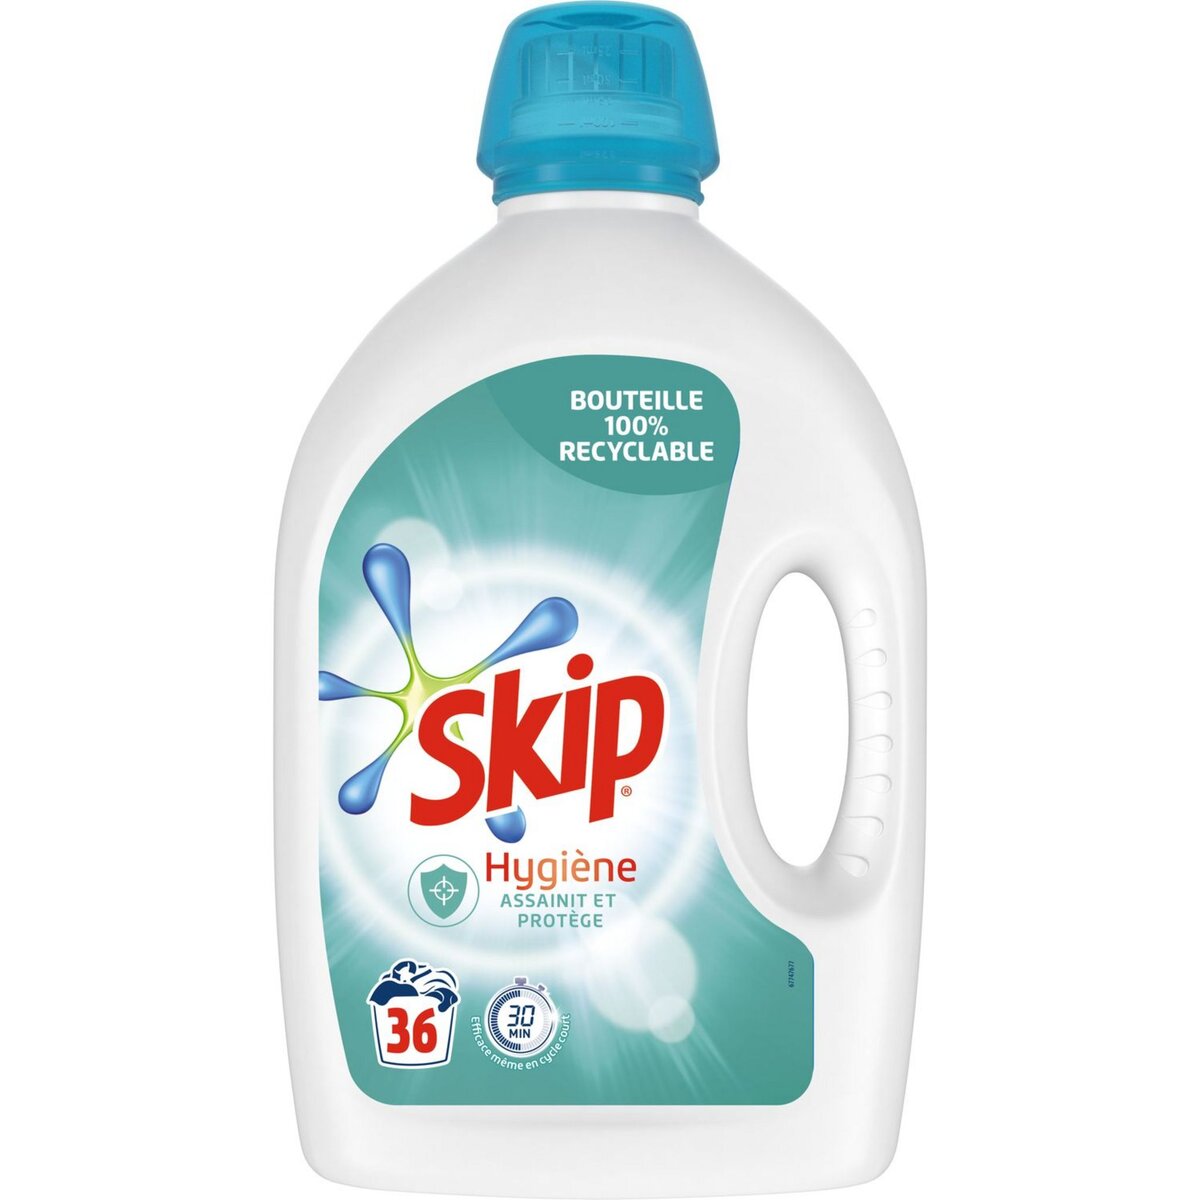 SKIP Lessive liquide assainit et protège 36 lavages 1,8l